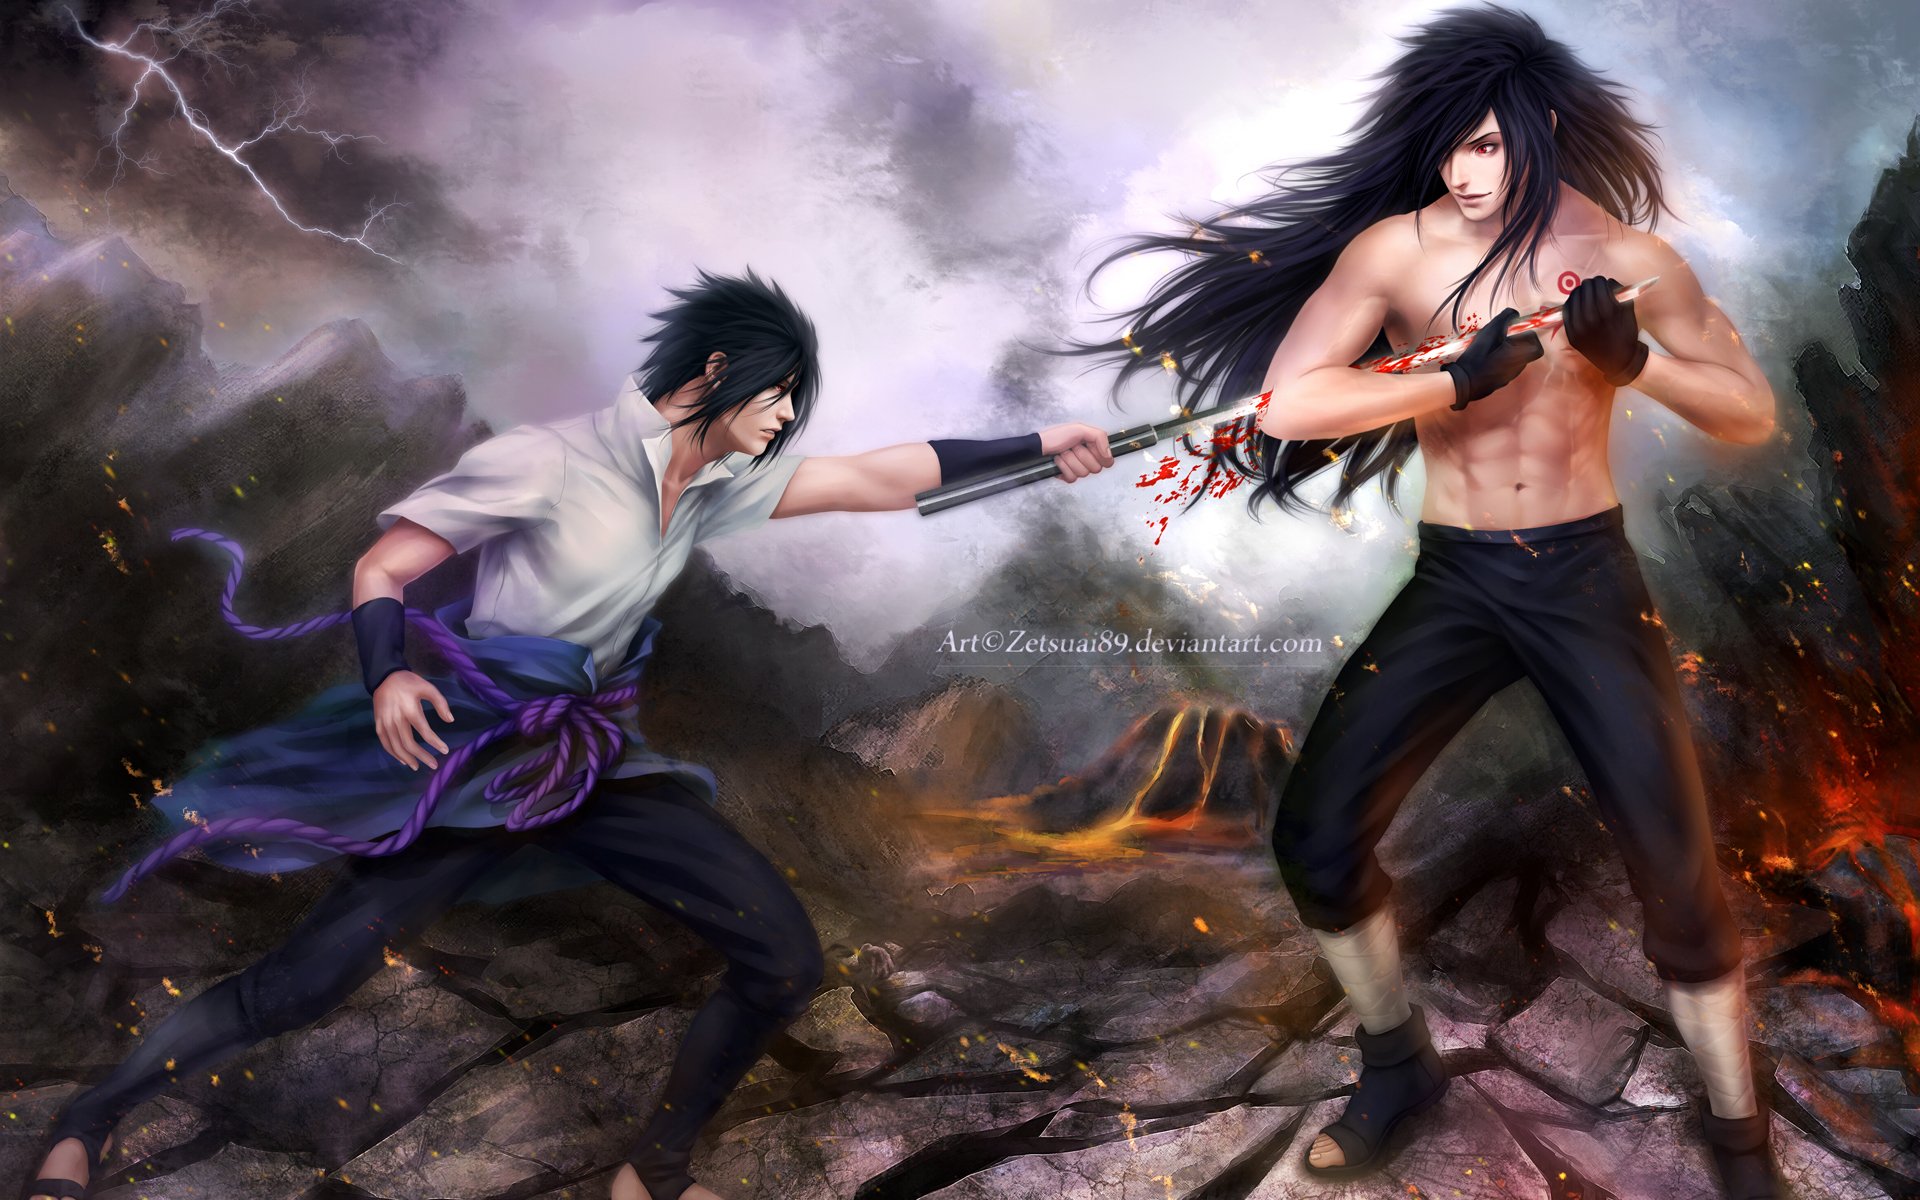 madara uchiha vs sasuke uchiha fighting anime hd wallpaper full